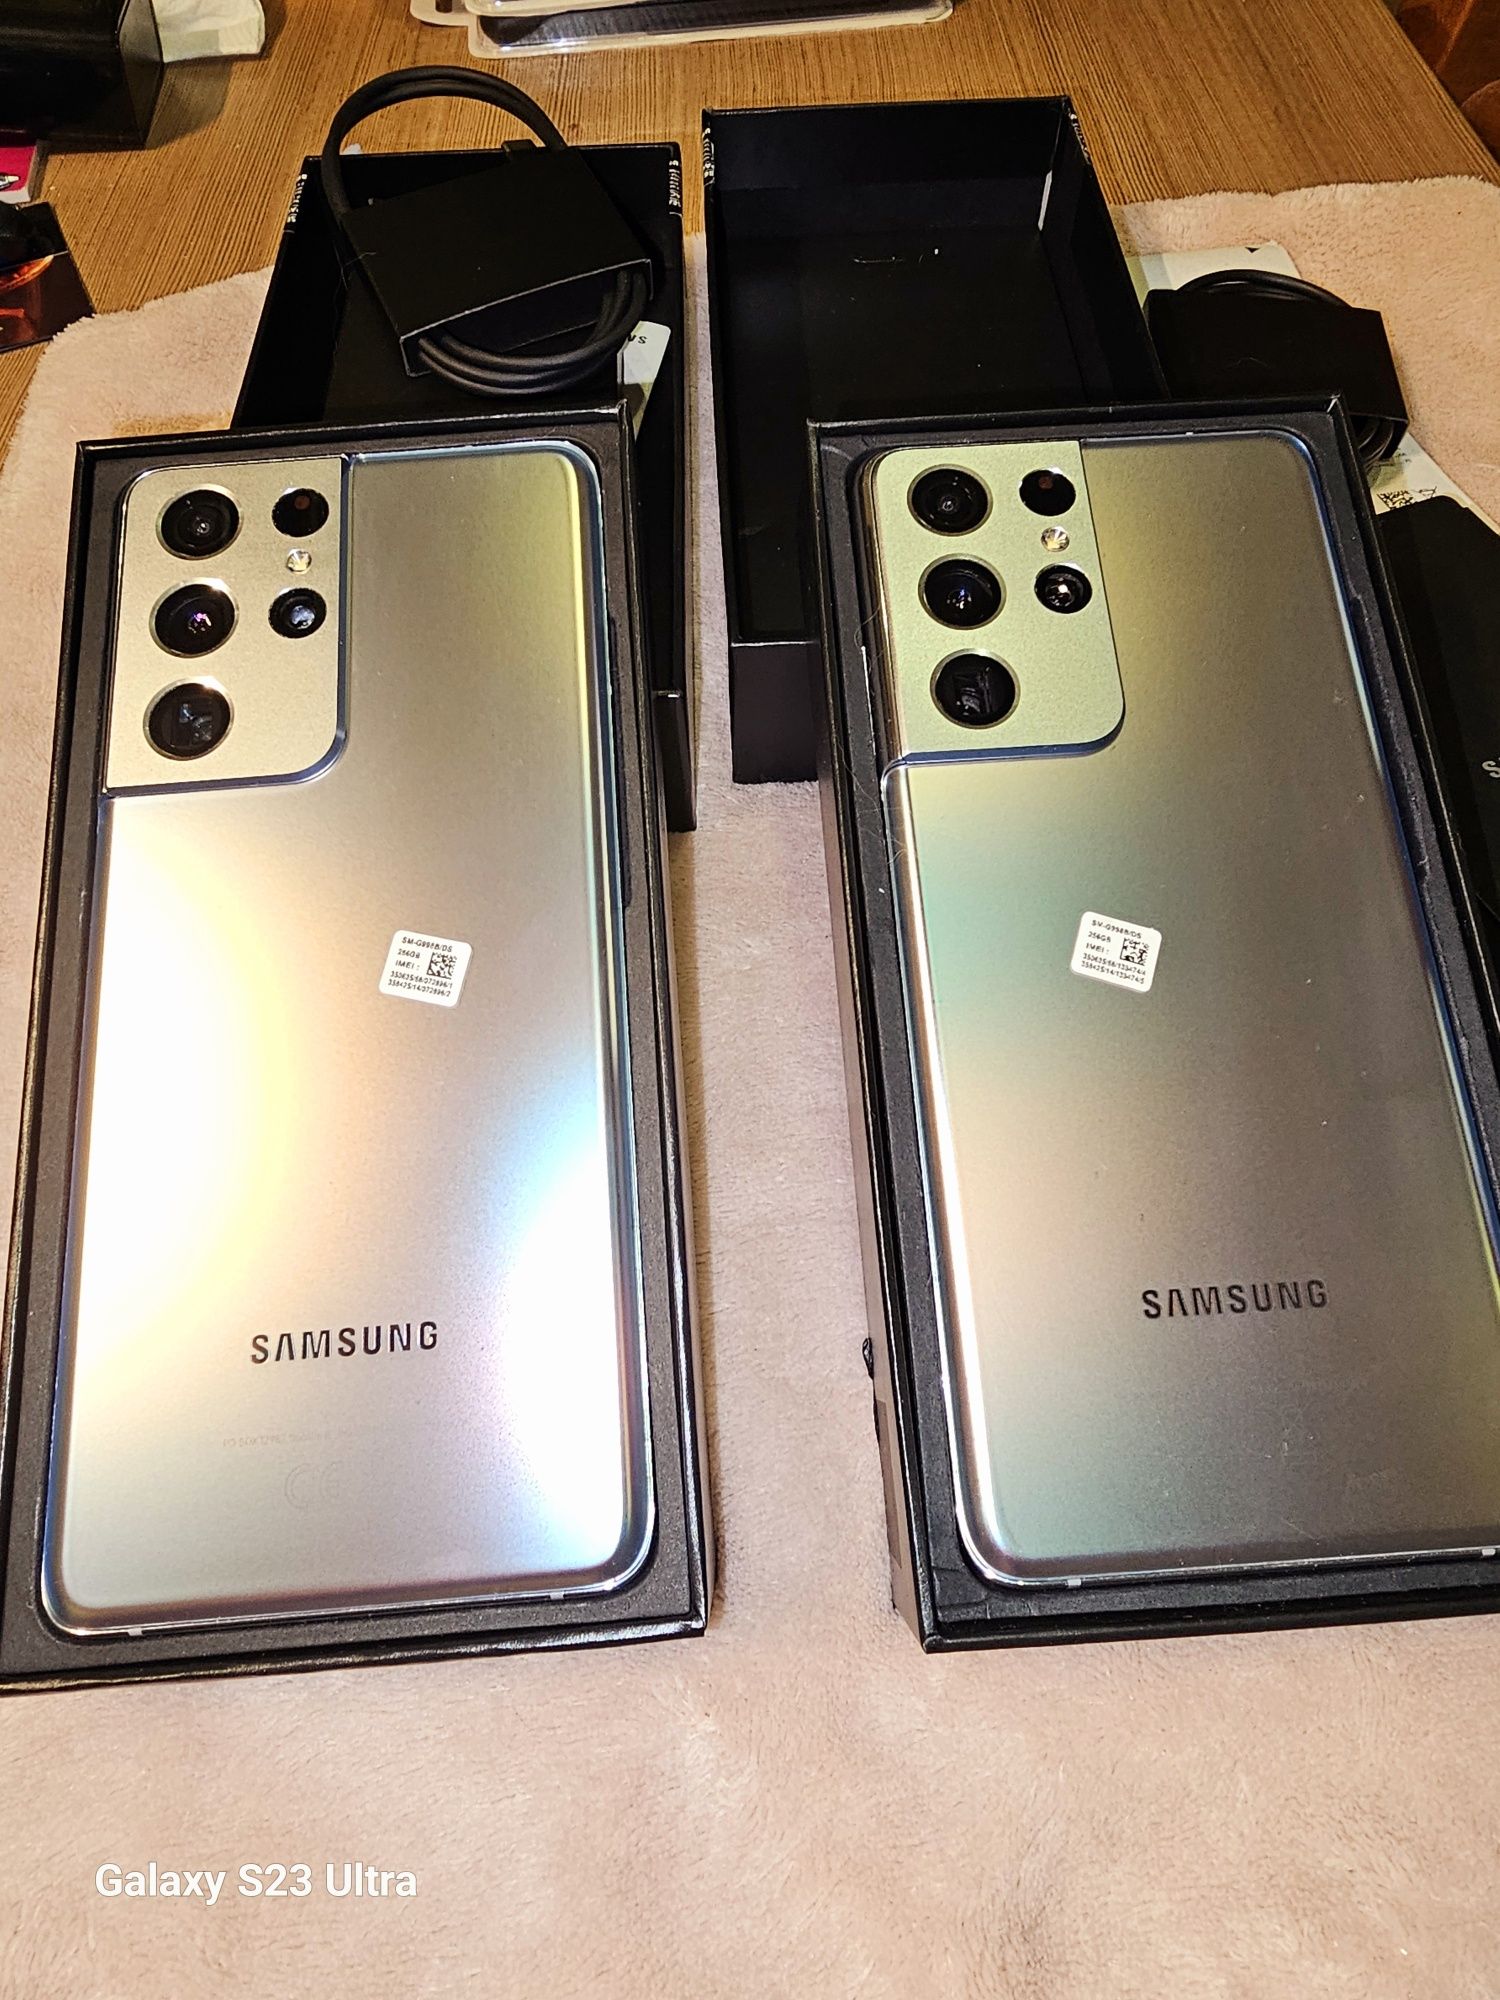 Pozostal juz tylko jeden, Samsung Galaxy S21 Ultra idealny stan Androi